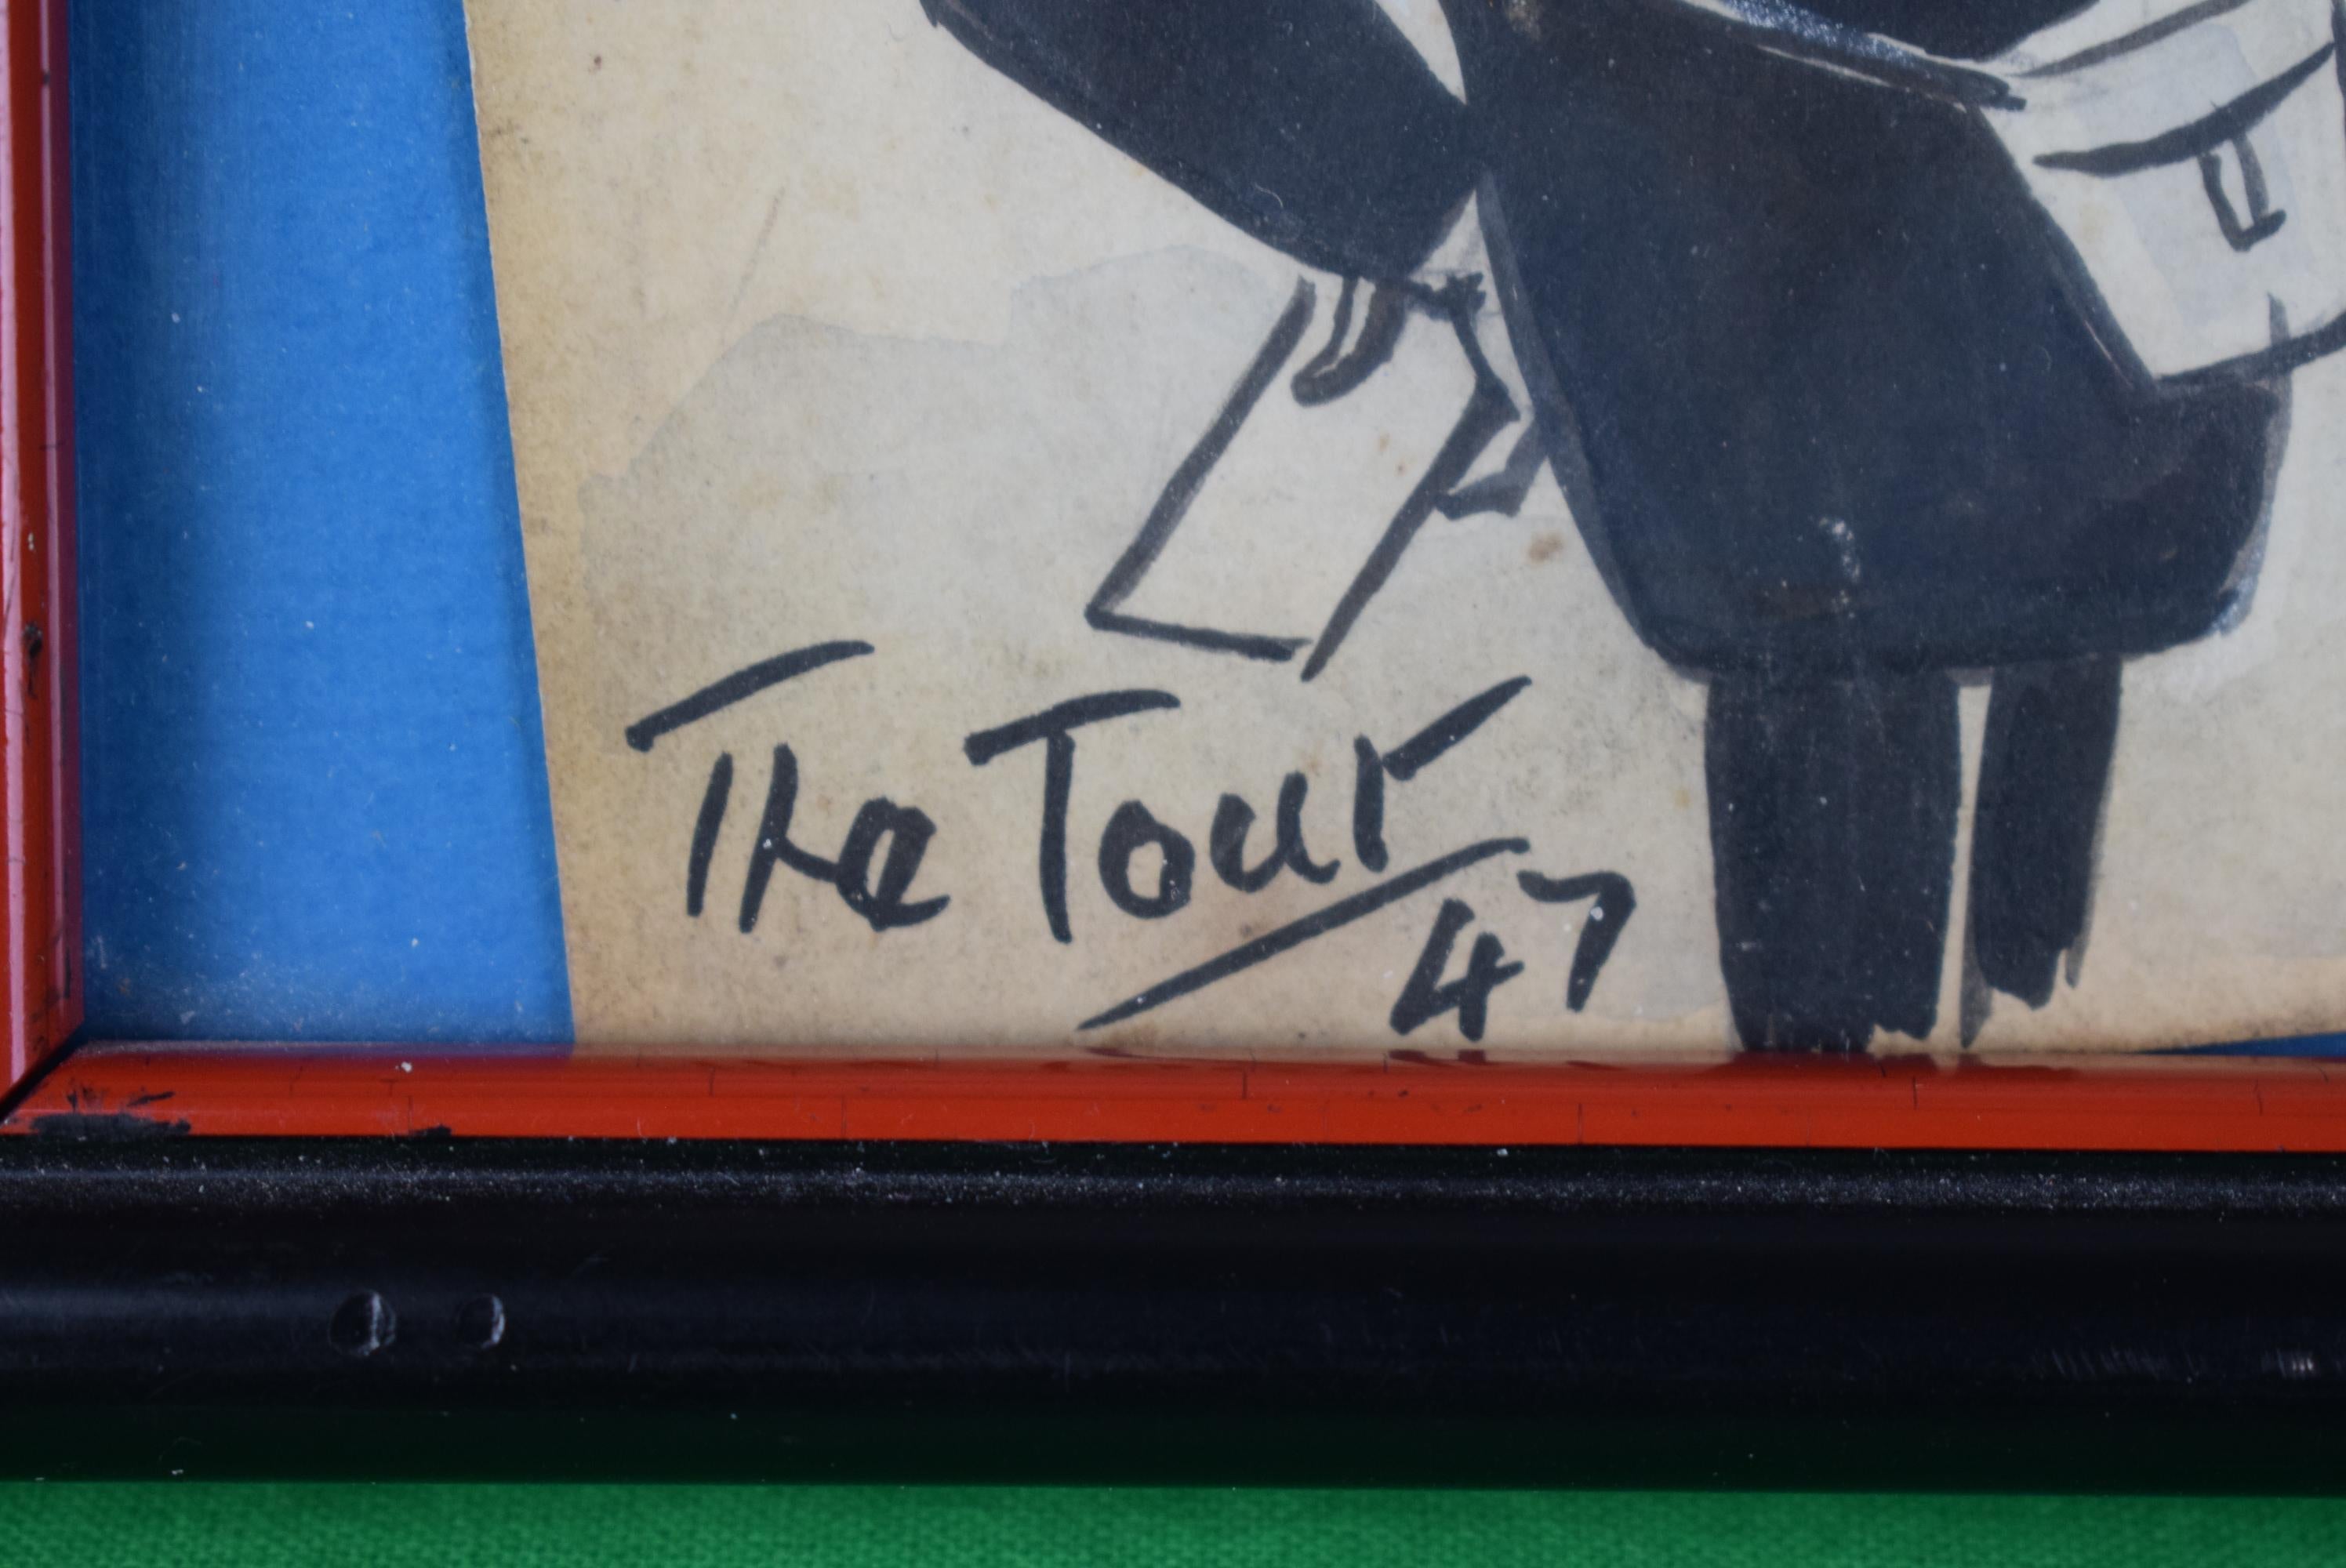 BUCHANAN Peter Ronald C. 1870-1950
Bekannt als The Tout arbeitete er in den 1930er Jahren als Sportkarikaturist und Karikaturist für die News of the World und den Tatler. 1931 stellte er 128 Zeichnungen in der Walker's Gallery, London, aus.

Kunst